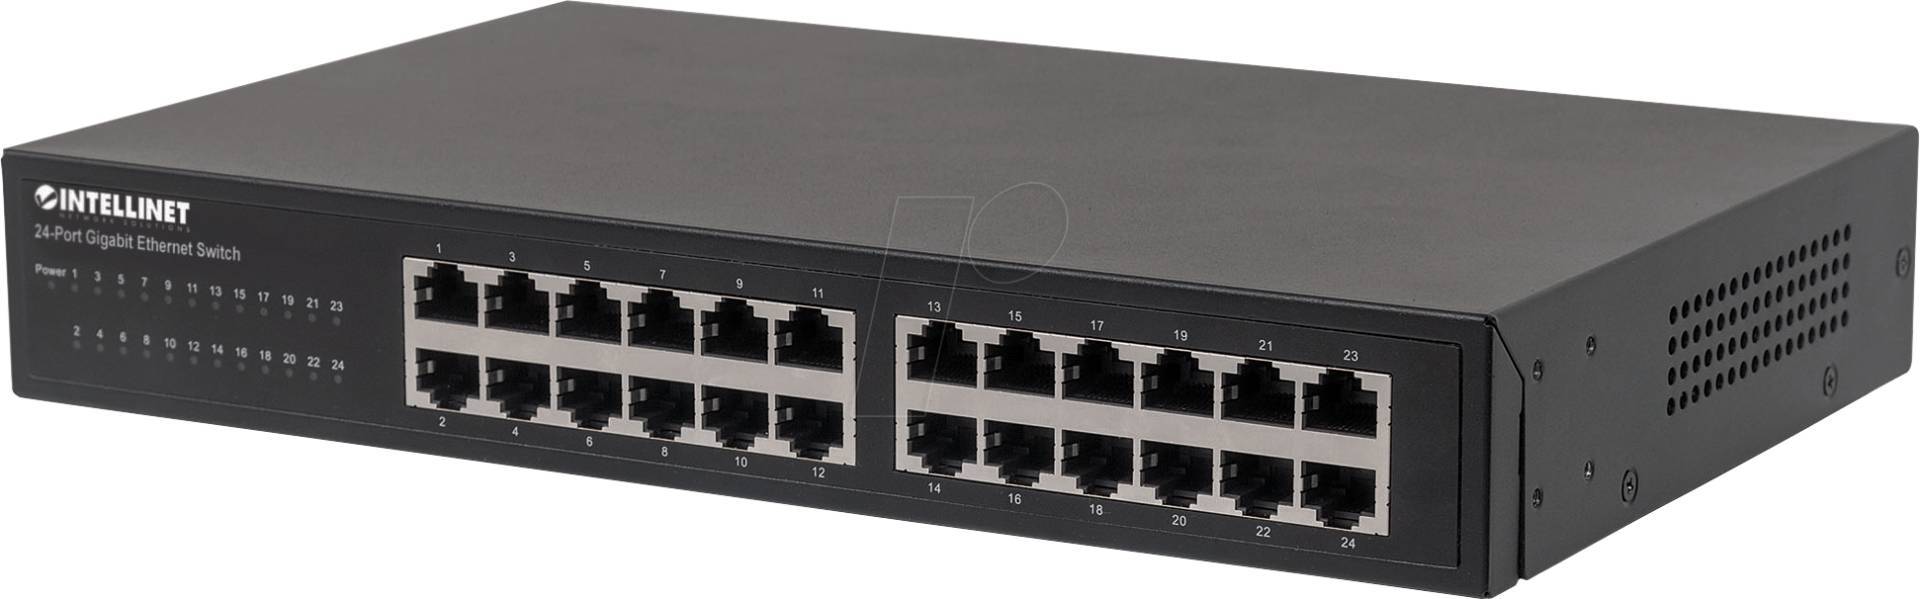 INT 561273 - Switch, 24-Port, Gigabit Ethernet von Intellinet